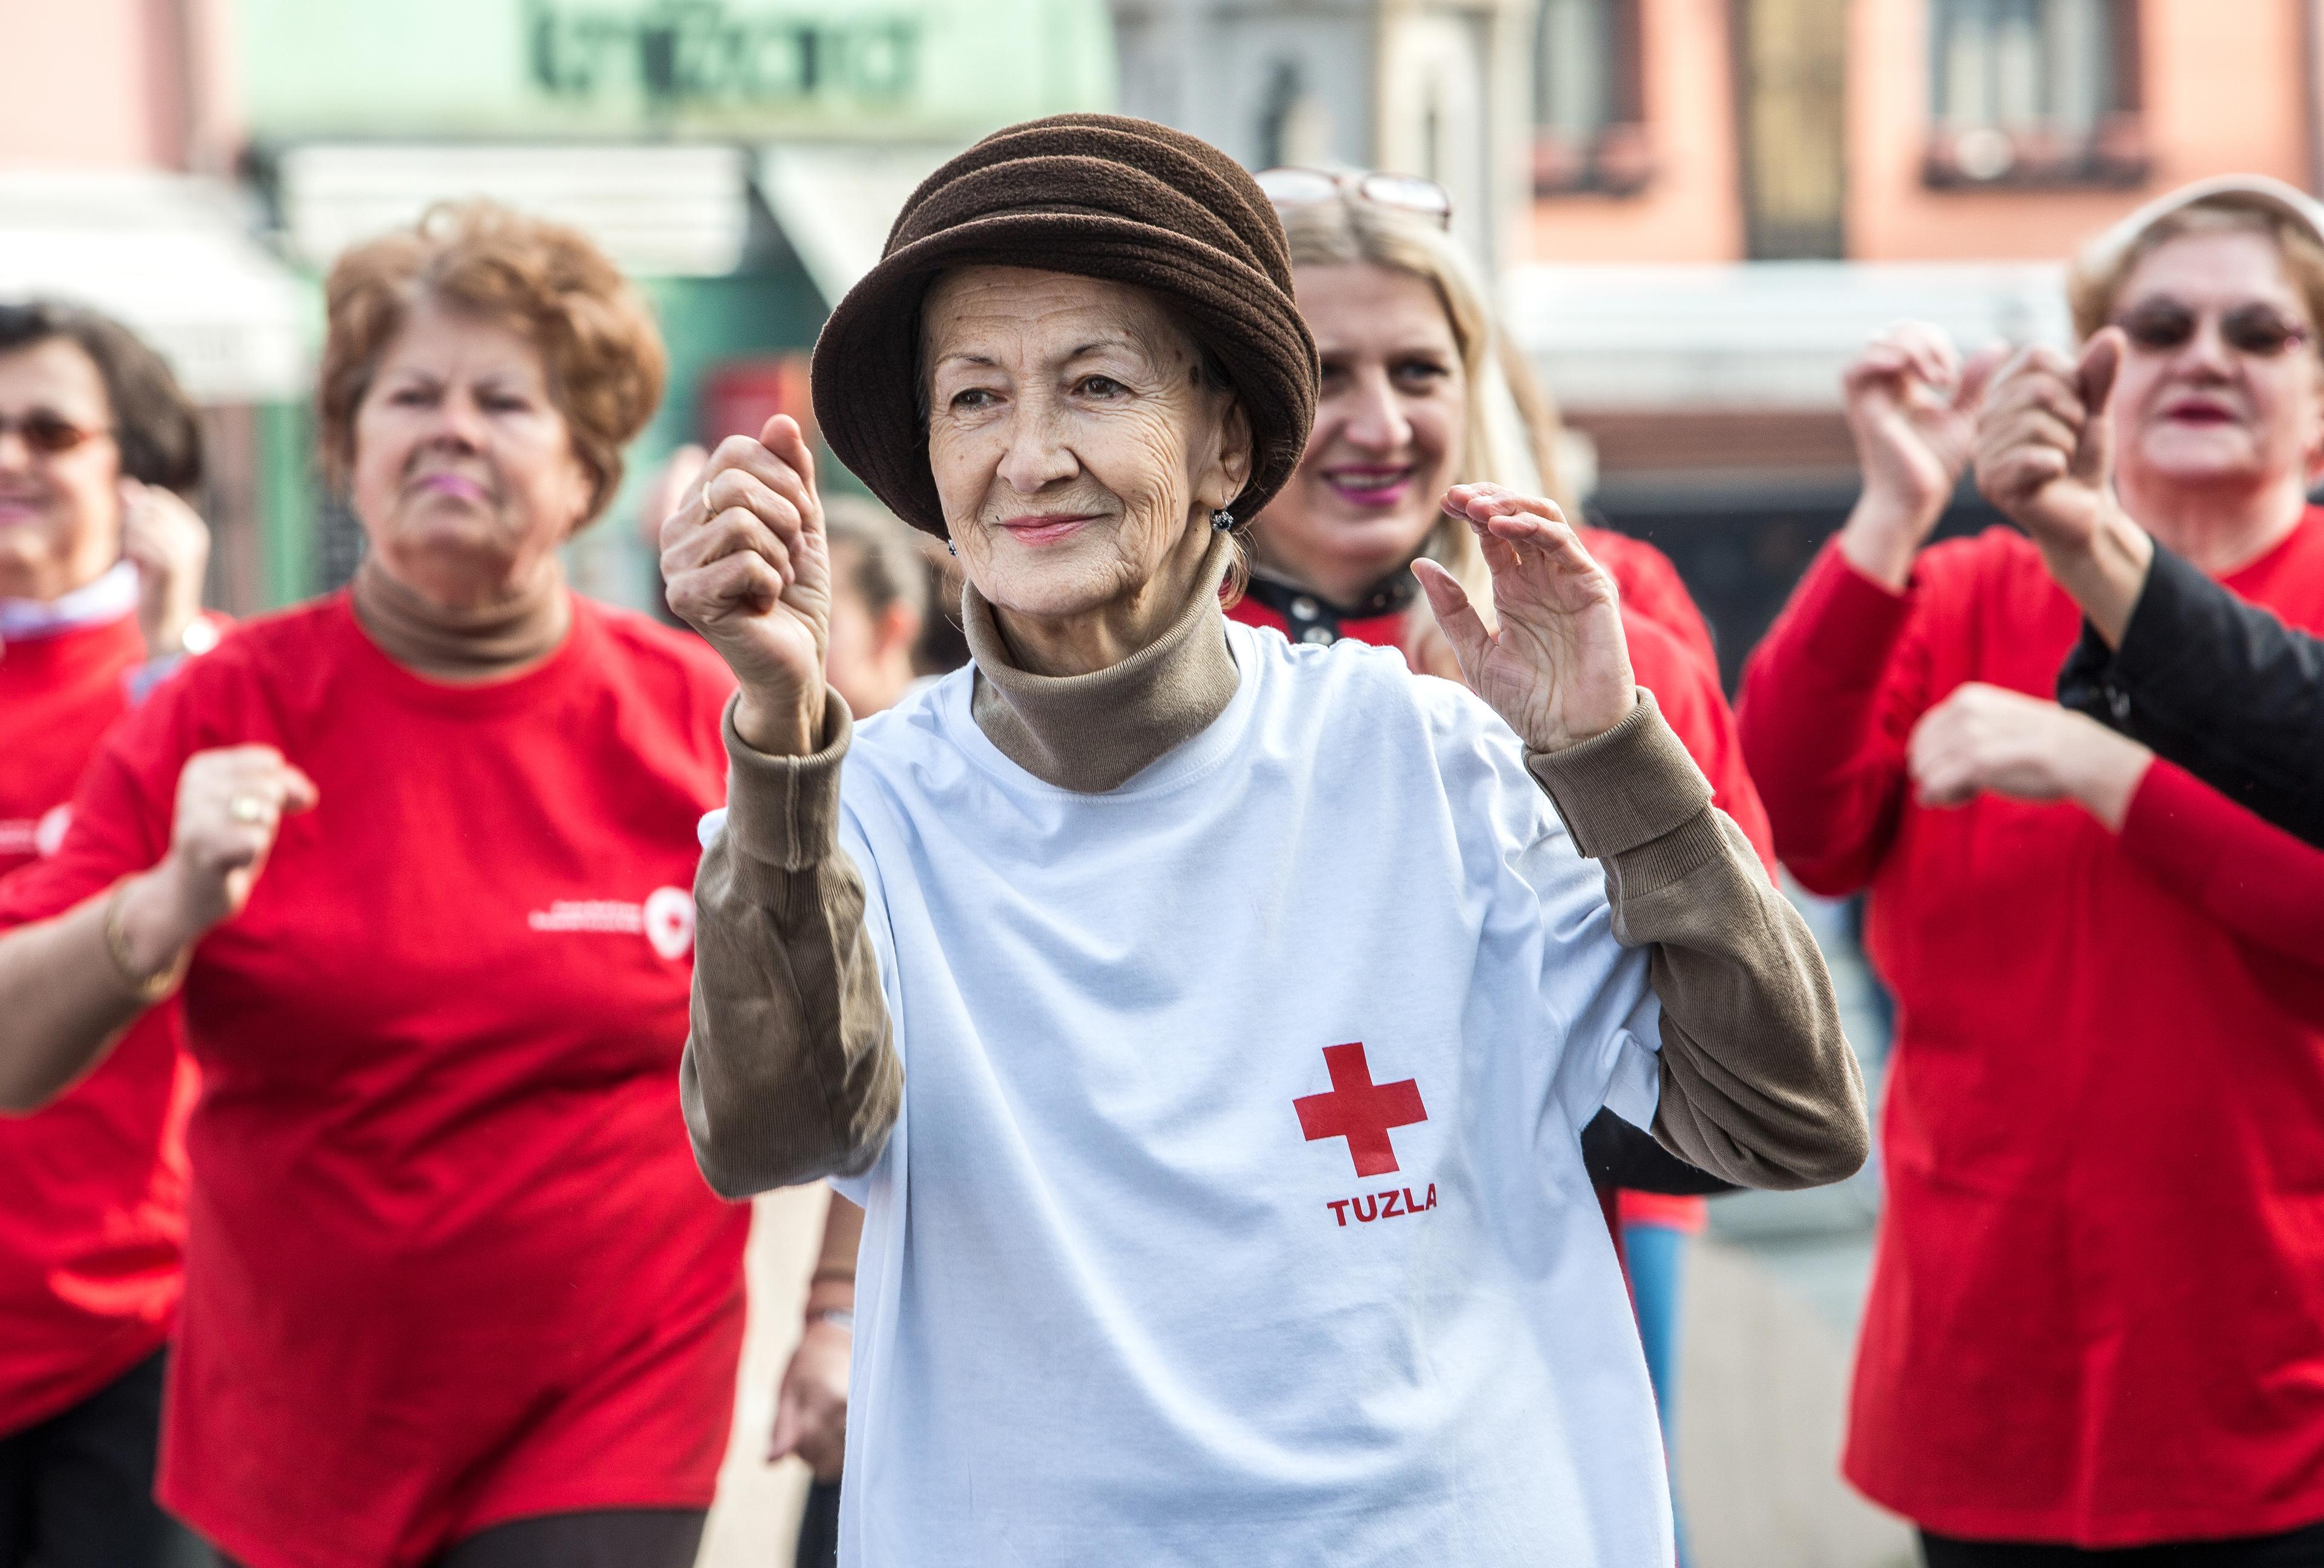 Betagte Frauen beim Bewegungstraining. Sie scheinen am Sport zu erfreuen. Eine ältere Dame trägt einen Hut und ein T-Shirt mit dem Roten Kreuz Tuzla (Bosnien).